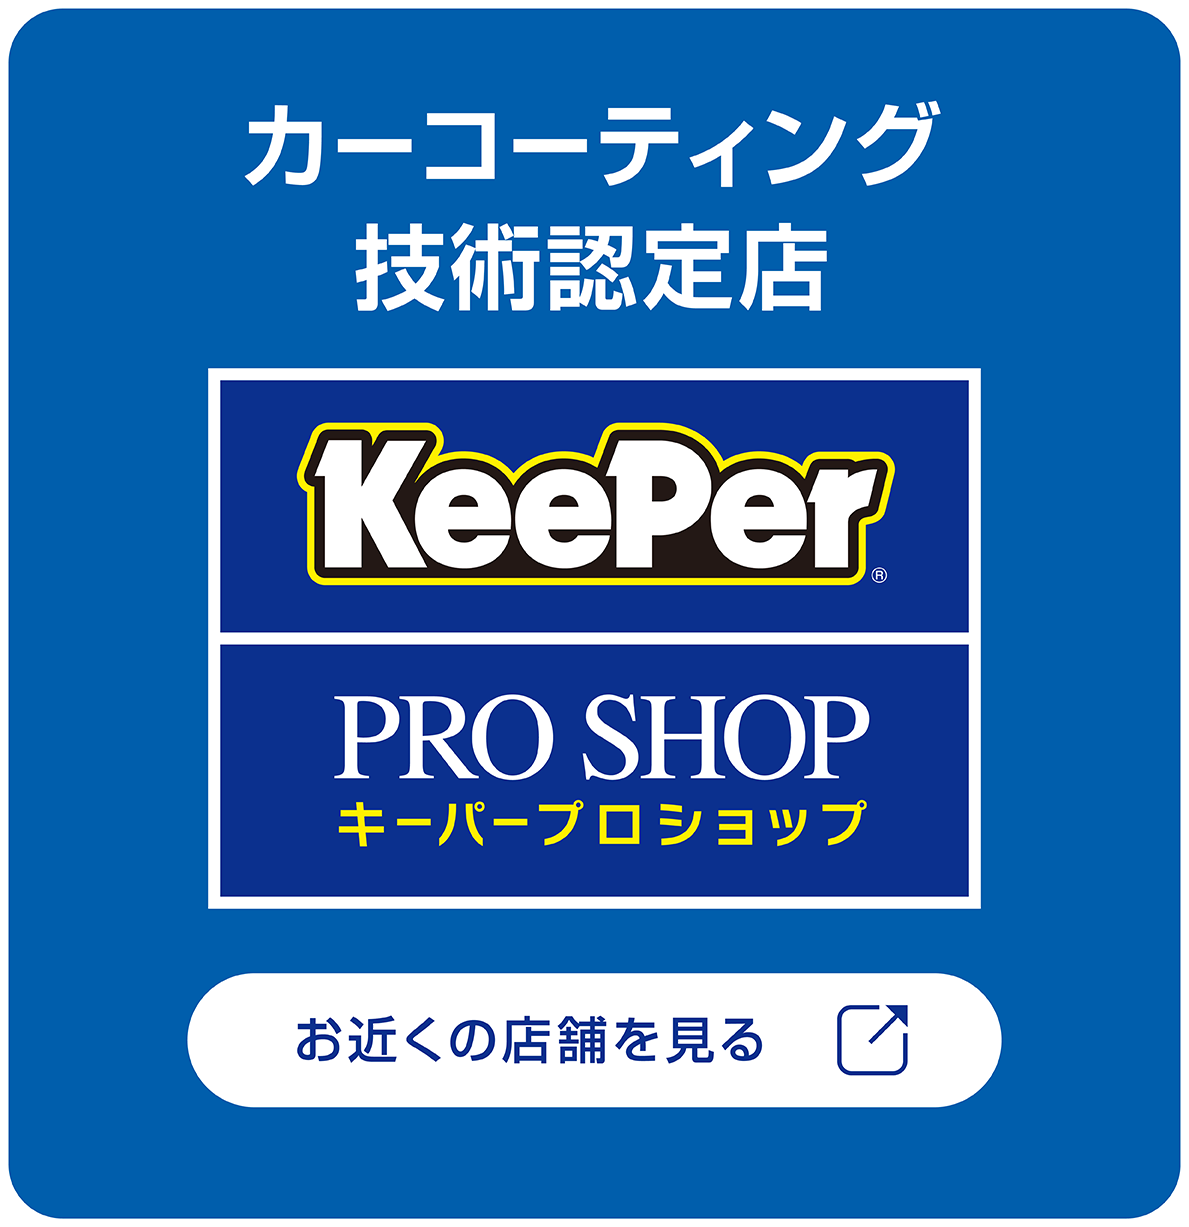 カーコーティング技術認定店 KeePer PROSHOP キーパープロショップ お近くの店舗を見る